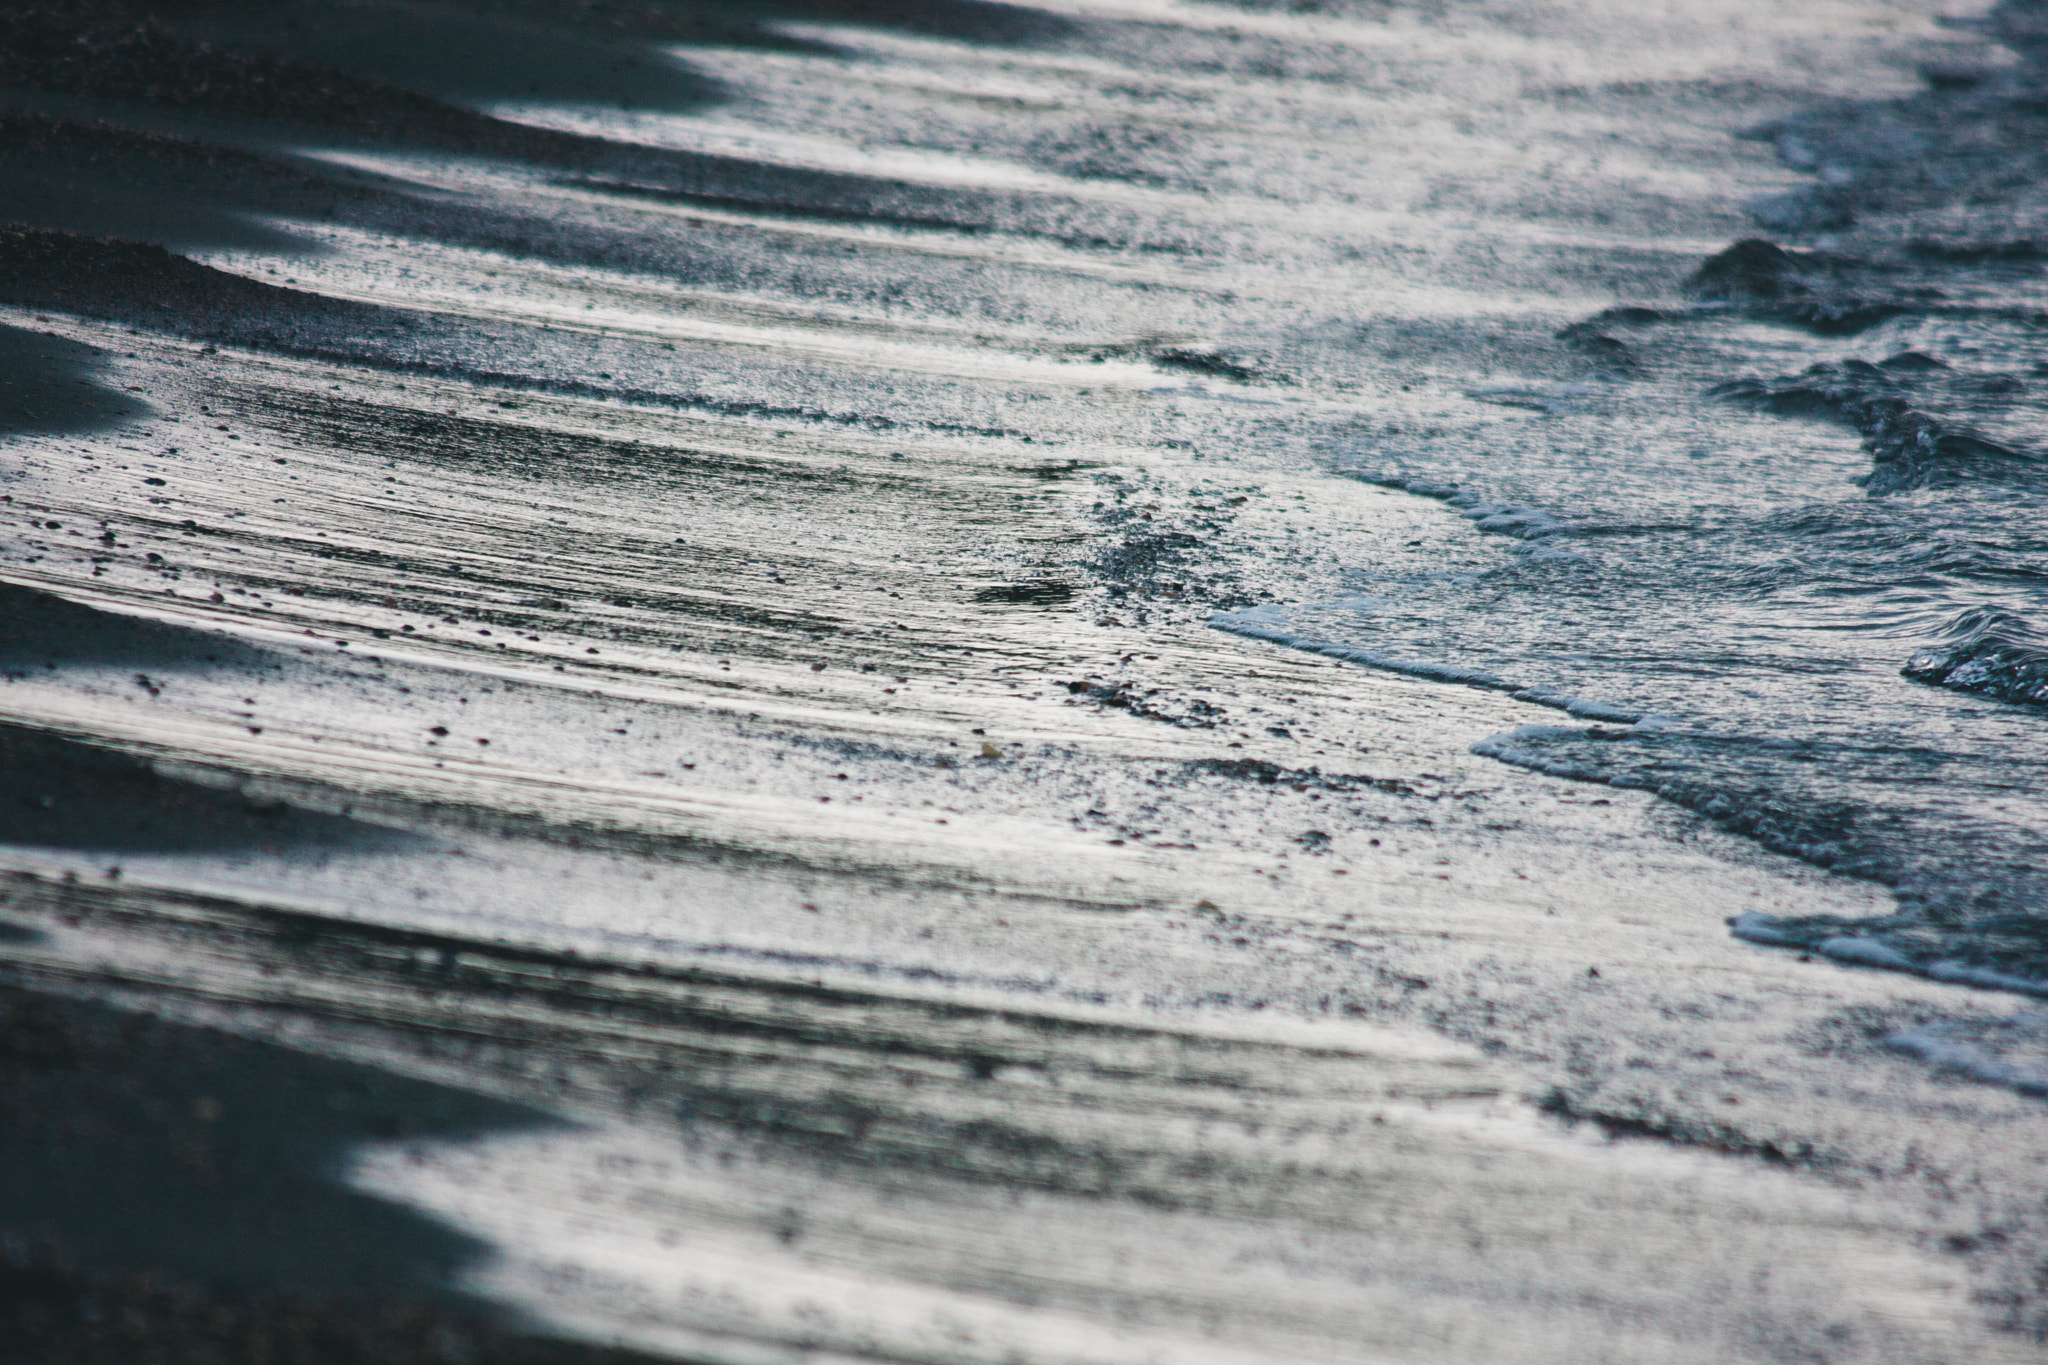 Canon EOS 40D sample photo. Winter sea photography